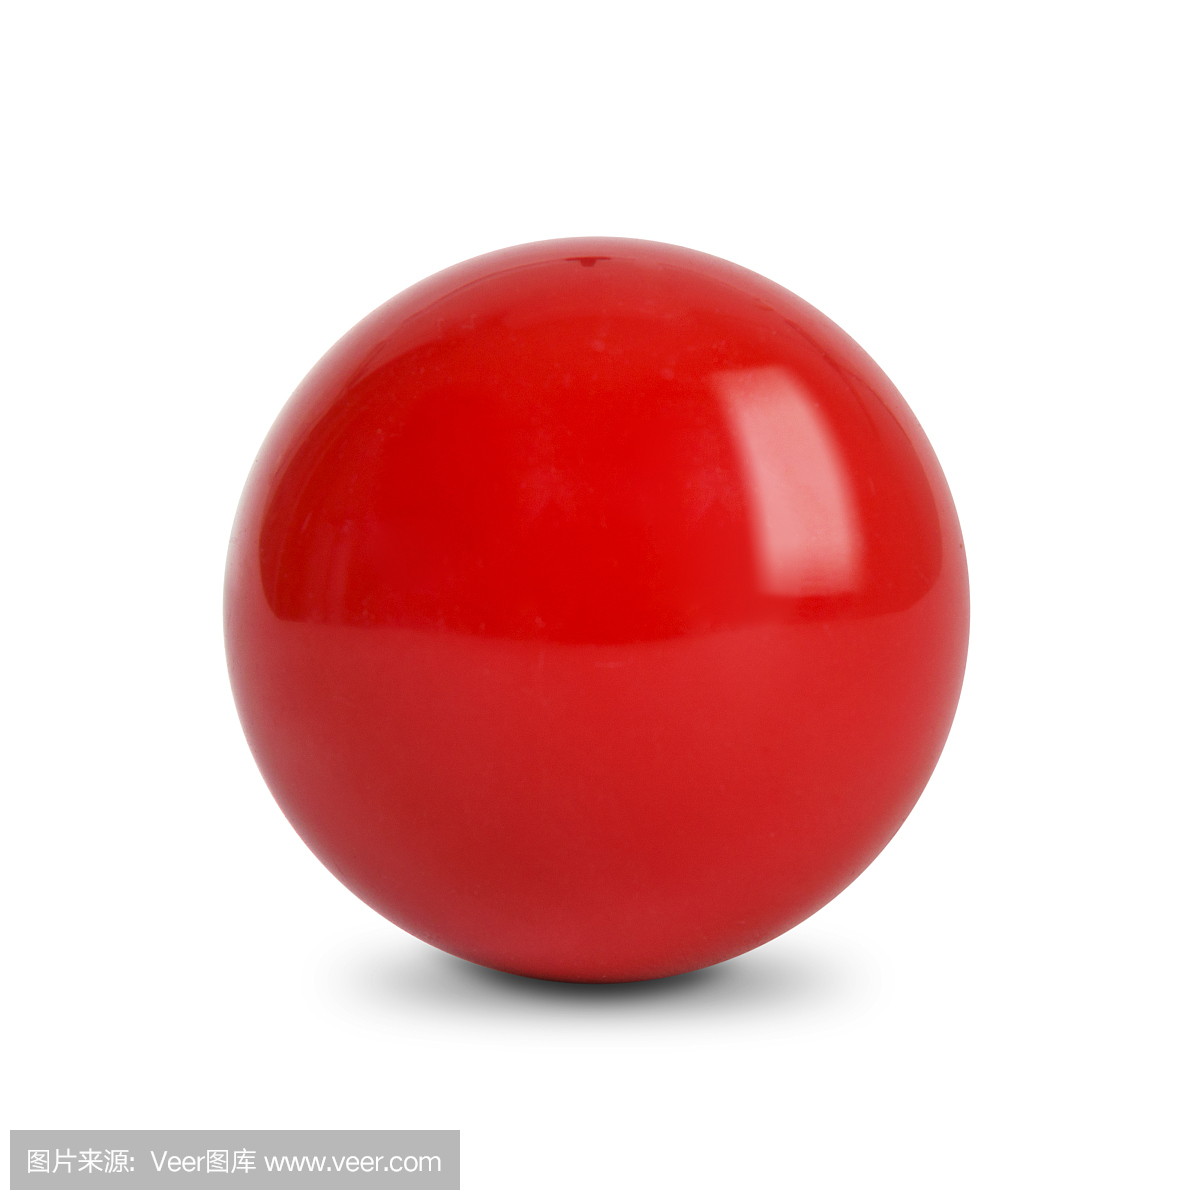 红色的球,在白色背景上的斯诺克球